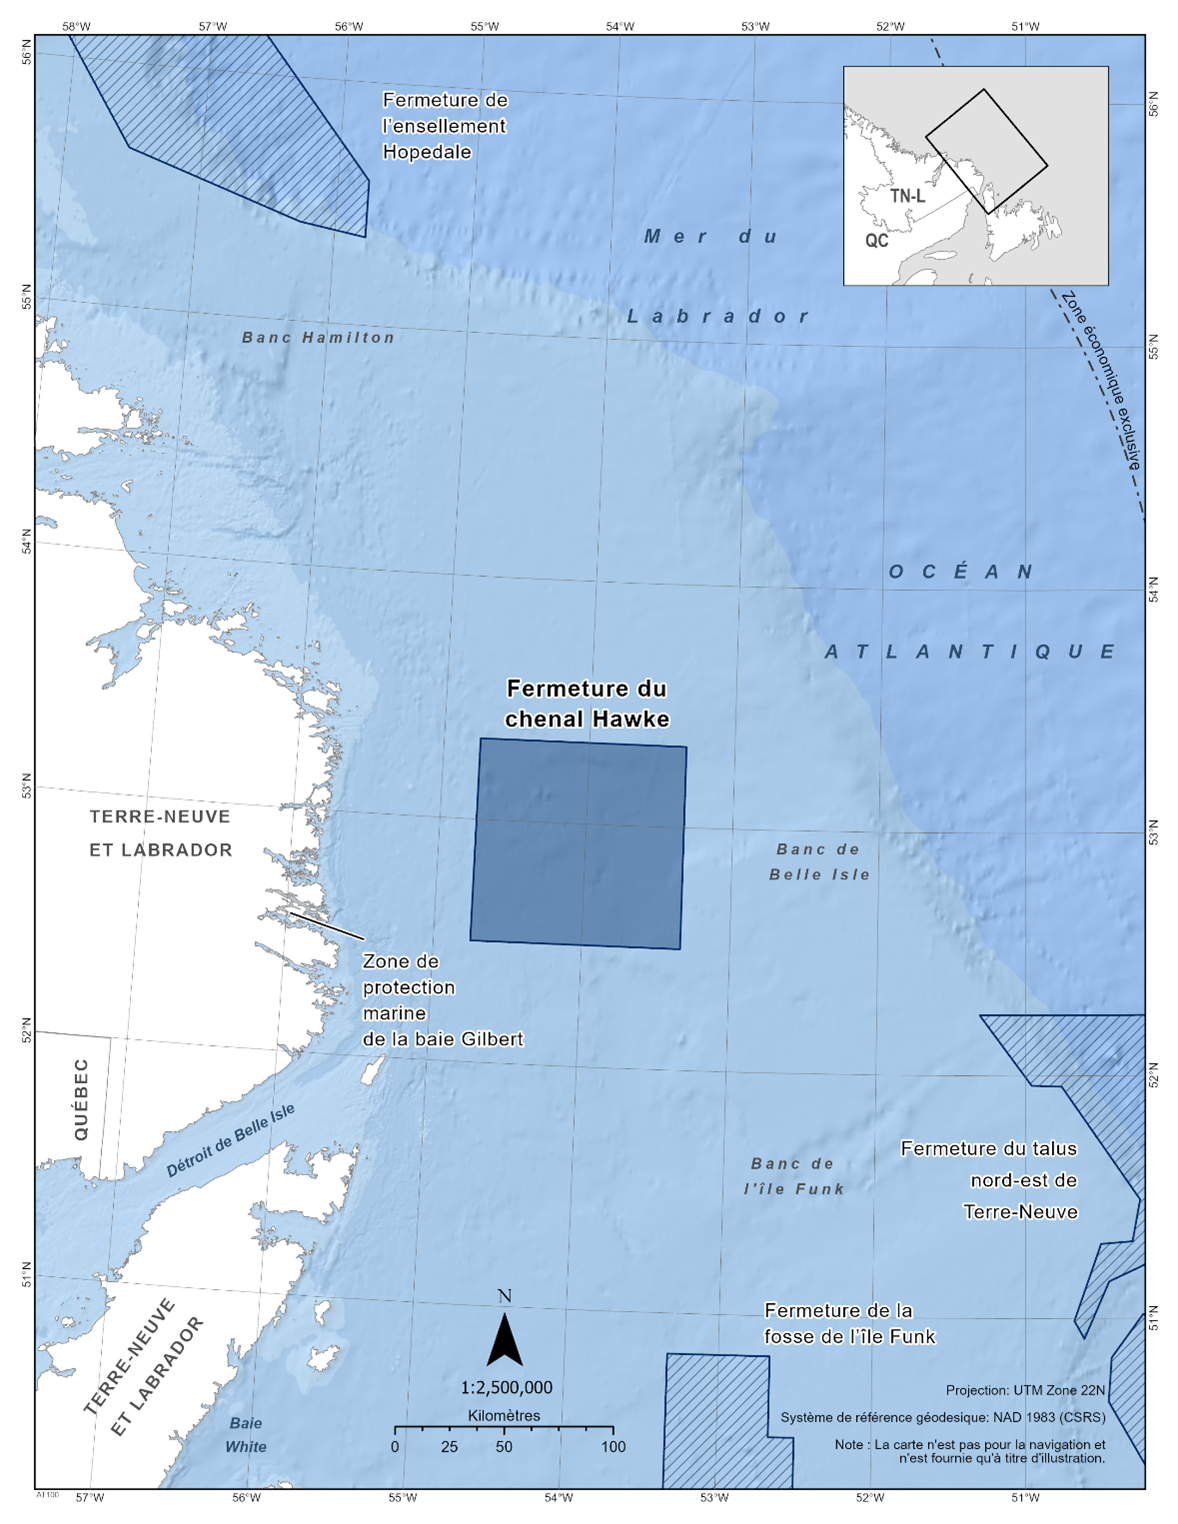 Carte de la fermeture du chenal Hawke en bleu foncé. La carte inclut également les autres refuges marins situés à proximité avec des lignes diagonales bleu foncé (fermeture de l’ensellement Hopedale, fermeture de la fosse de l’île Funk, fermeture du talus nord-est de Terre-Neuve). 